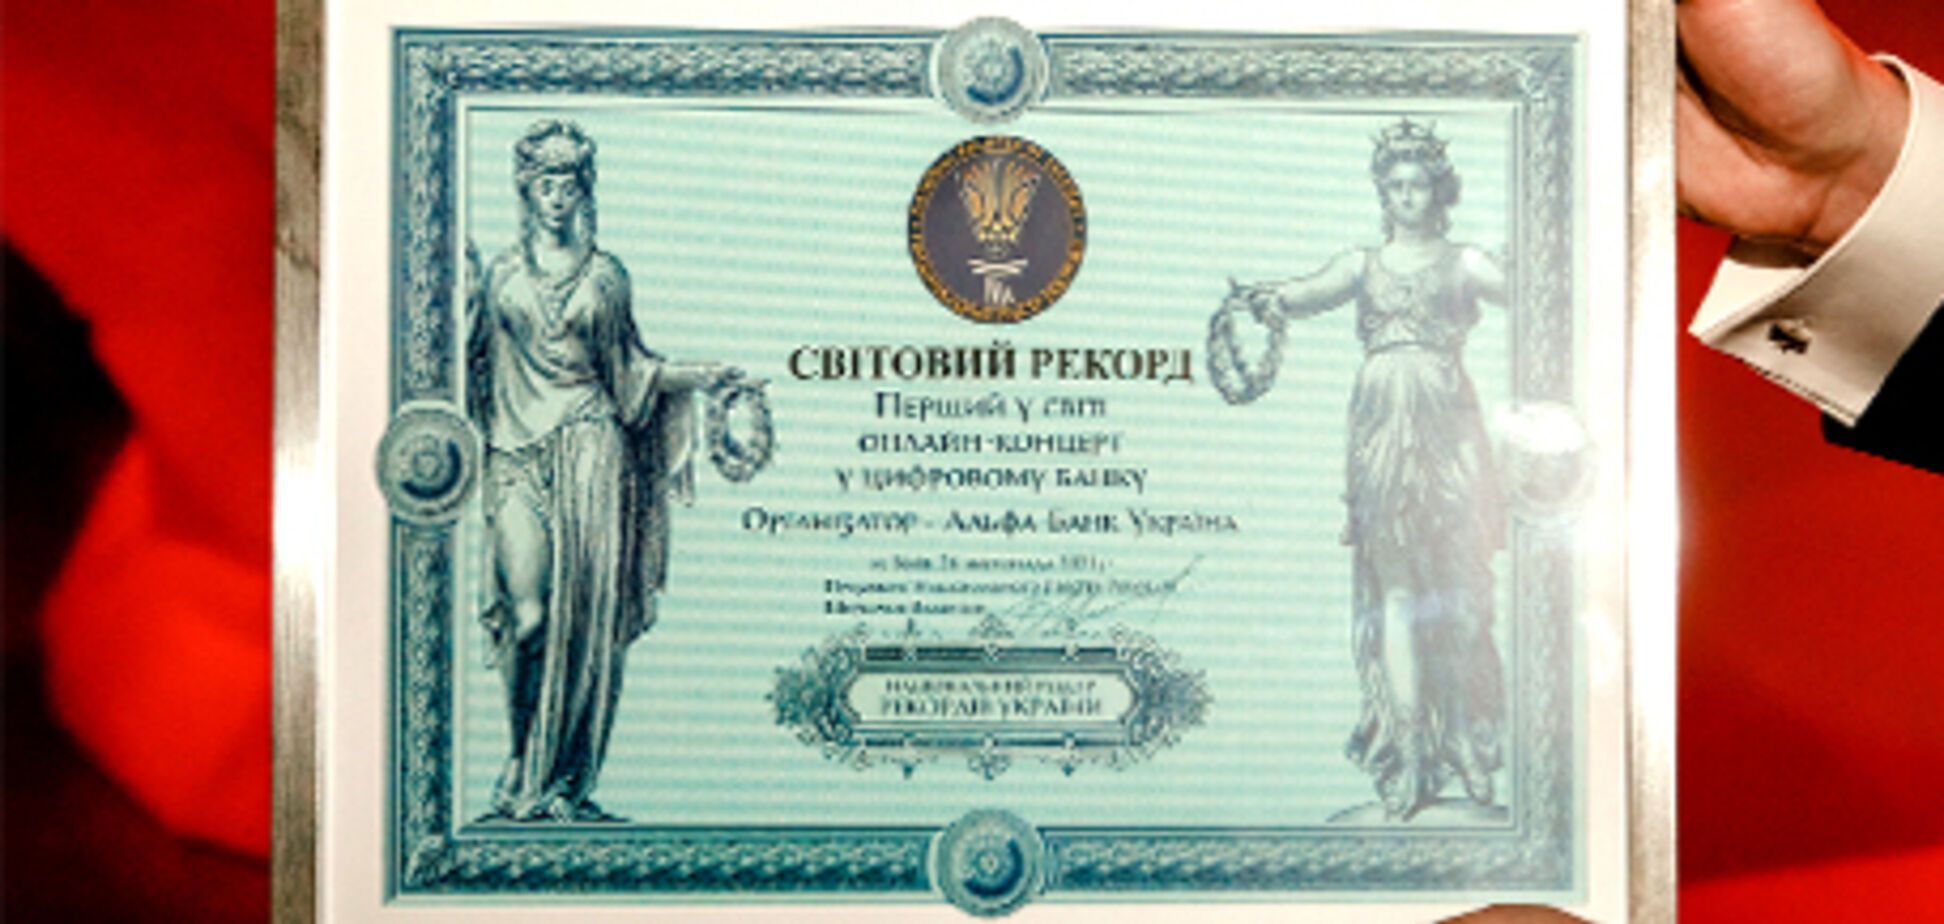 Світовий рекорд: Альфа-Банк Україна провів перший у світі онлайн-концерт у цифровому банку